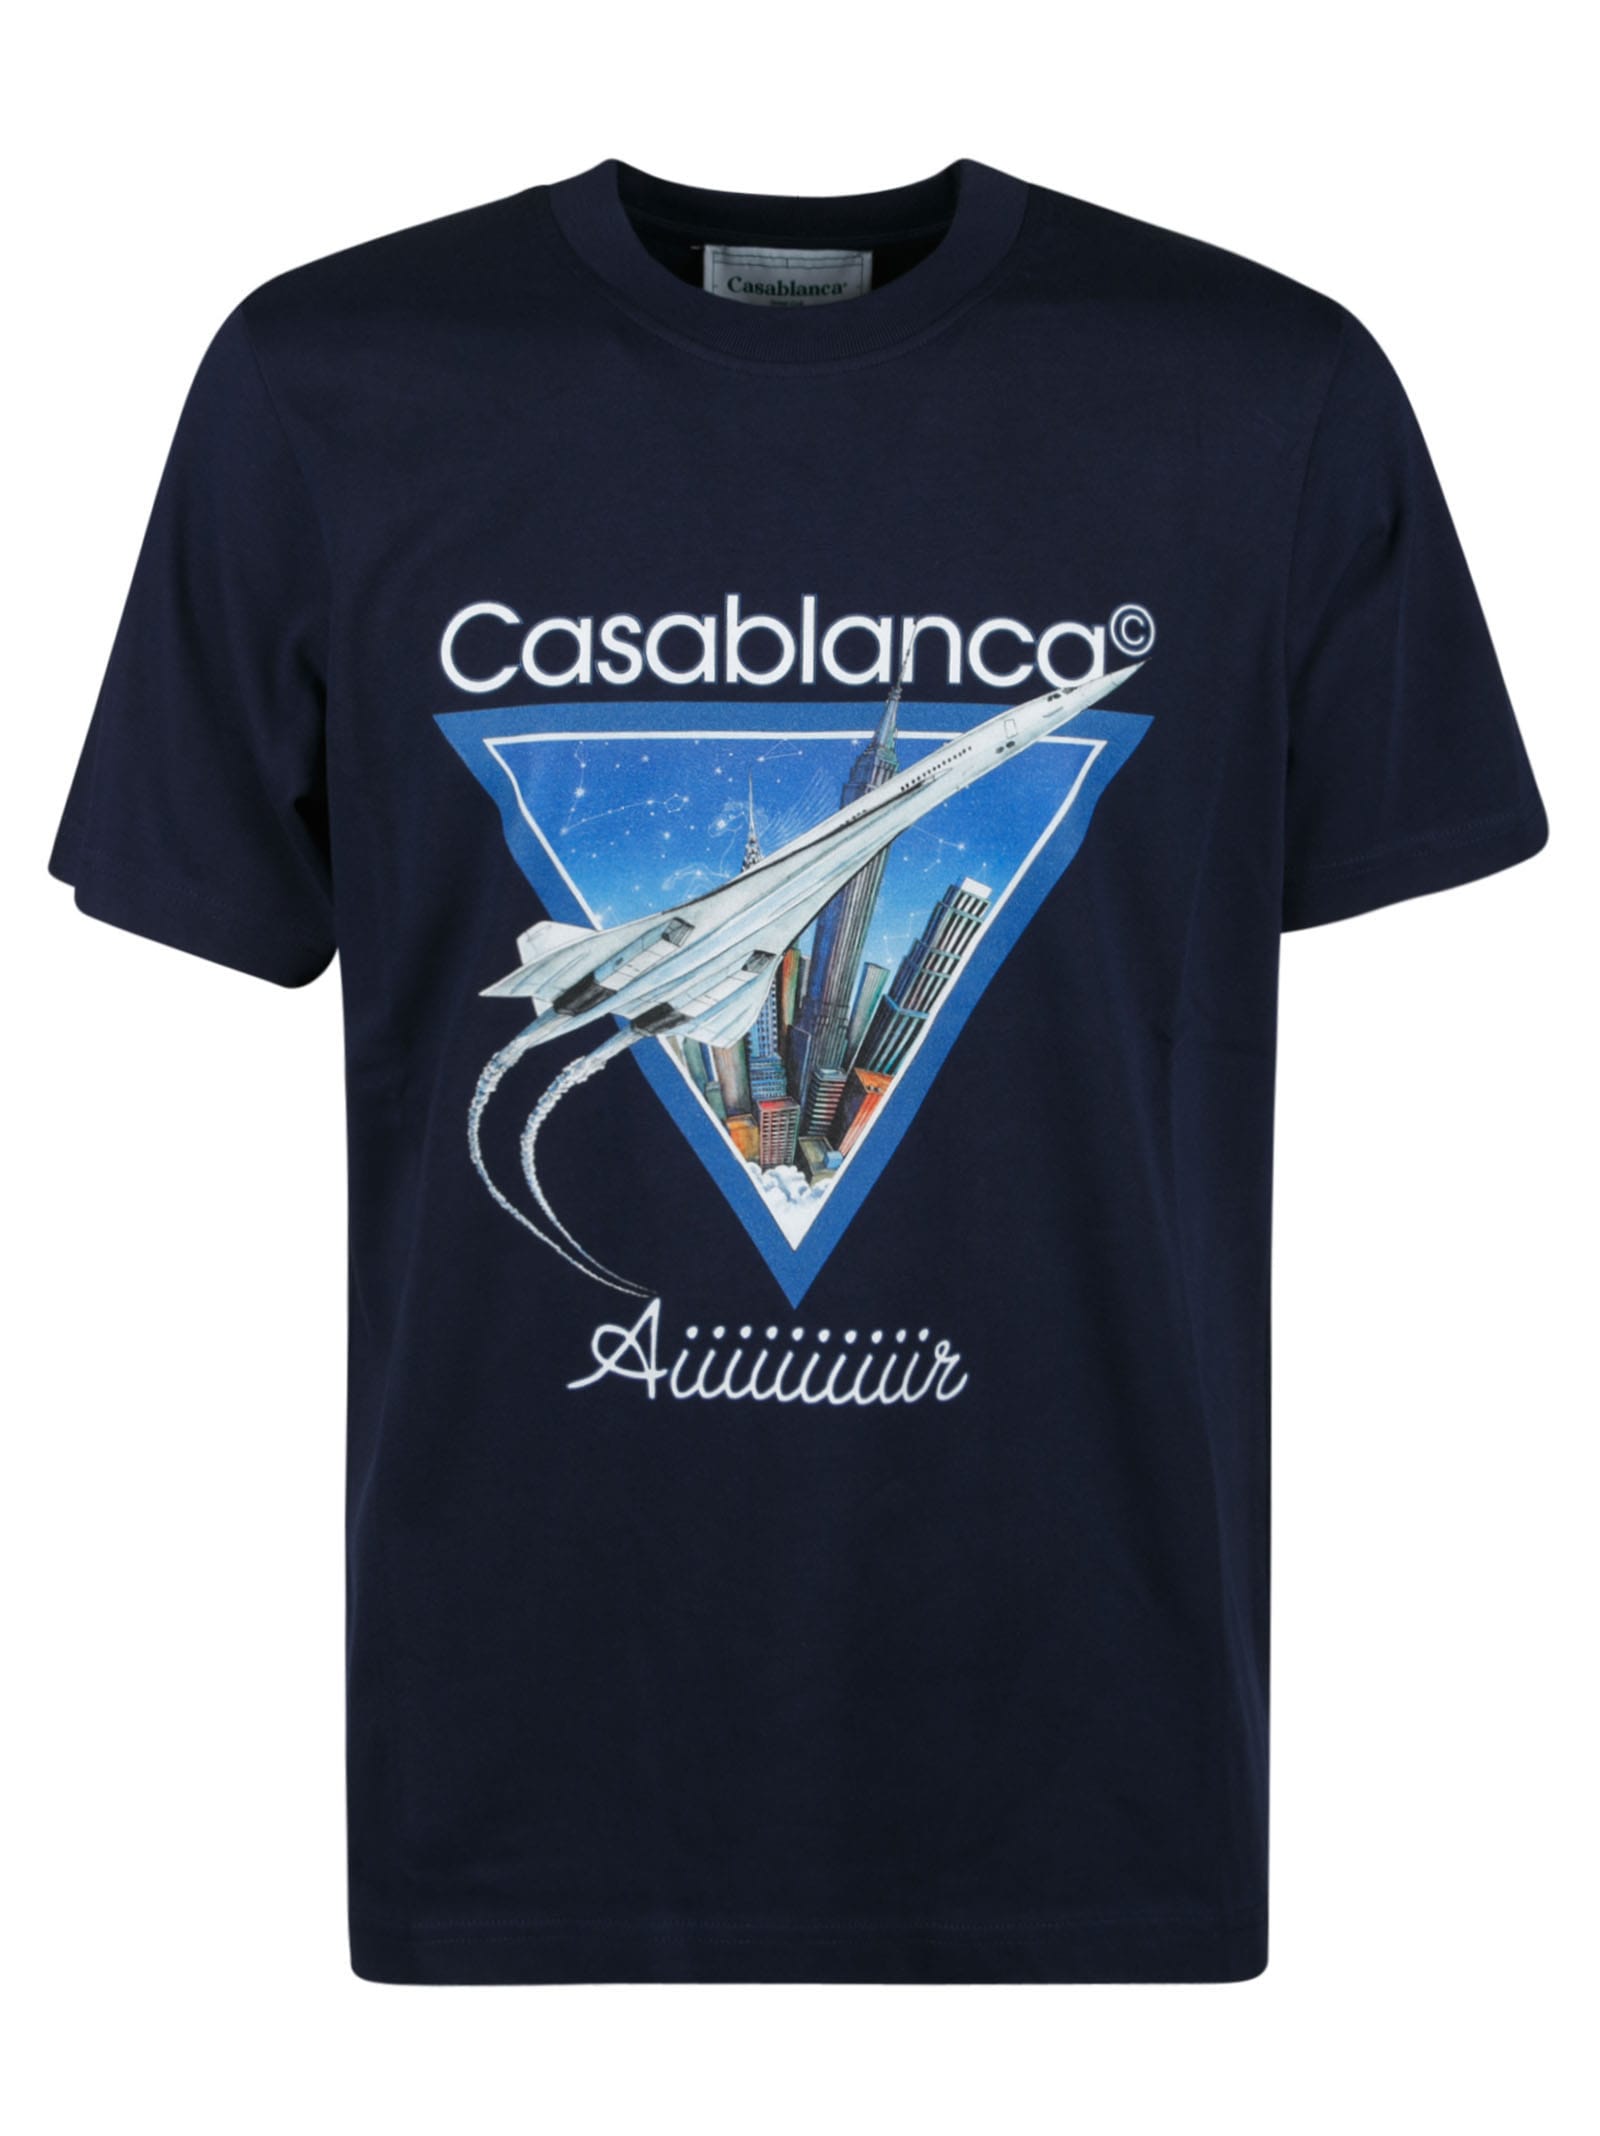 Casablanca Aiiiiir Printed T-shirt